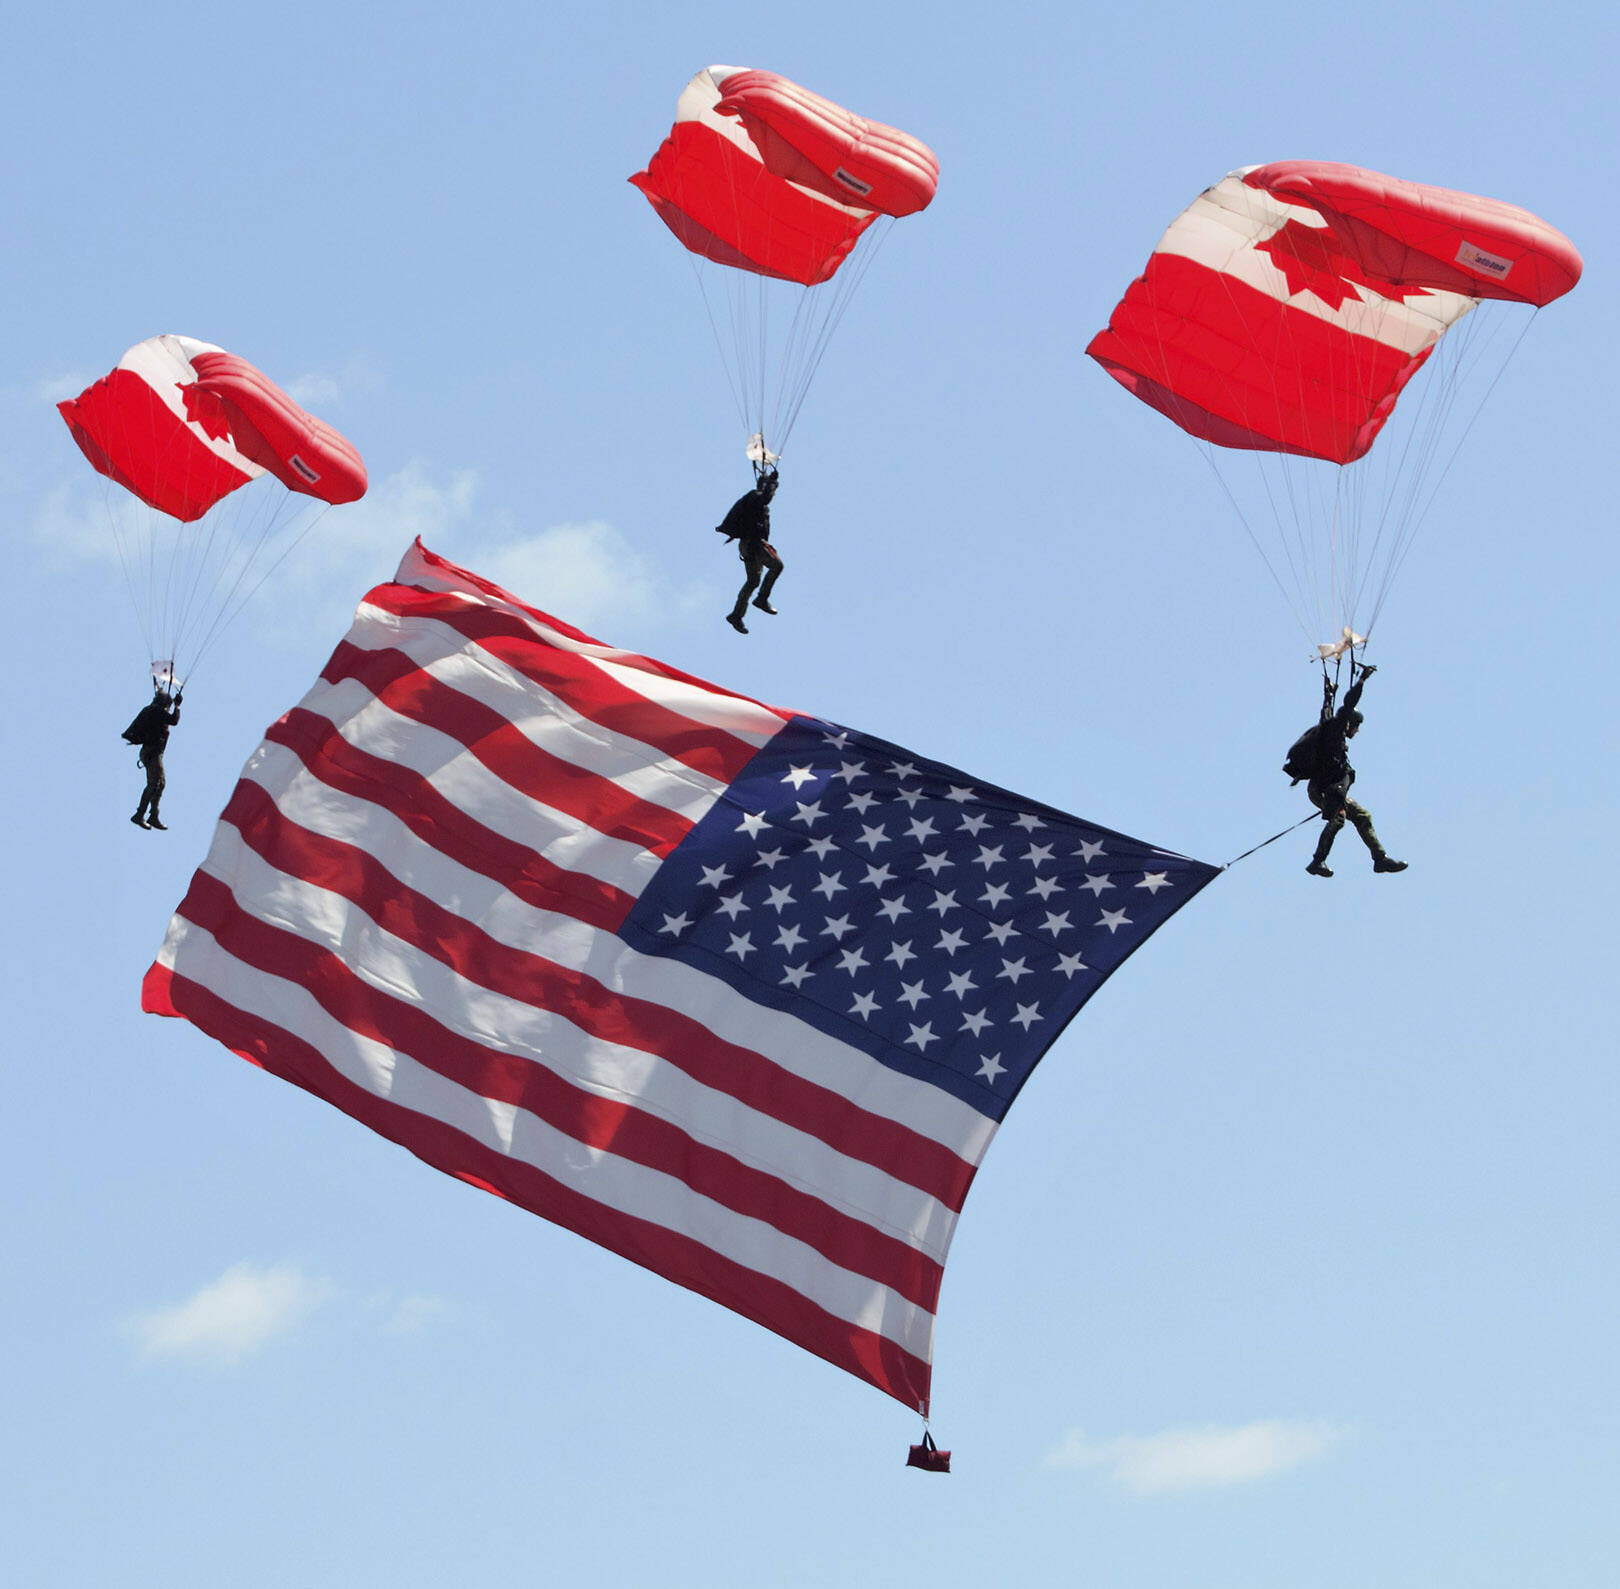 Elisha Meyer/Kitsap News Group Photos
The Skyhawks present the American flag in a rehearsal jump.